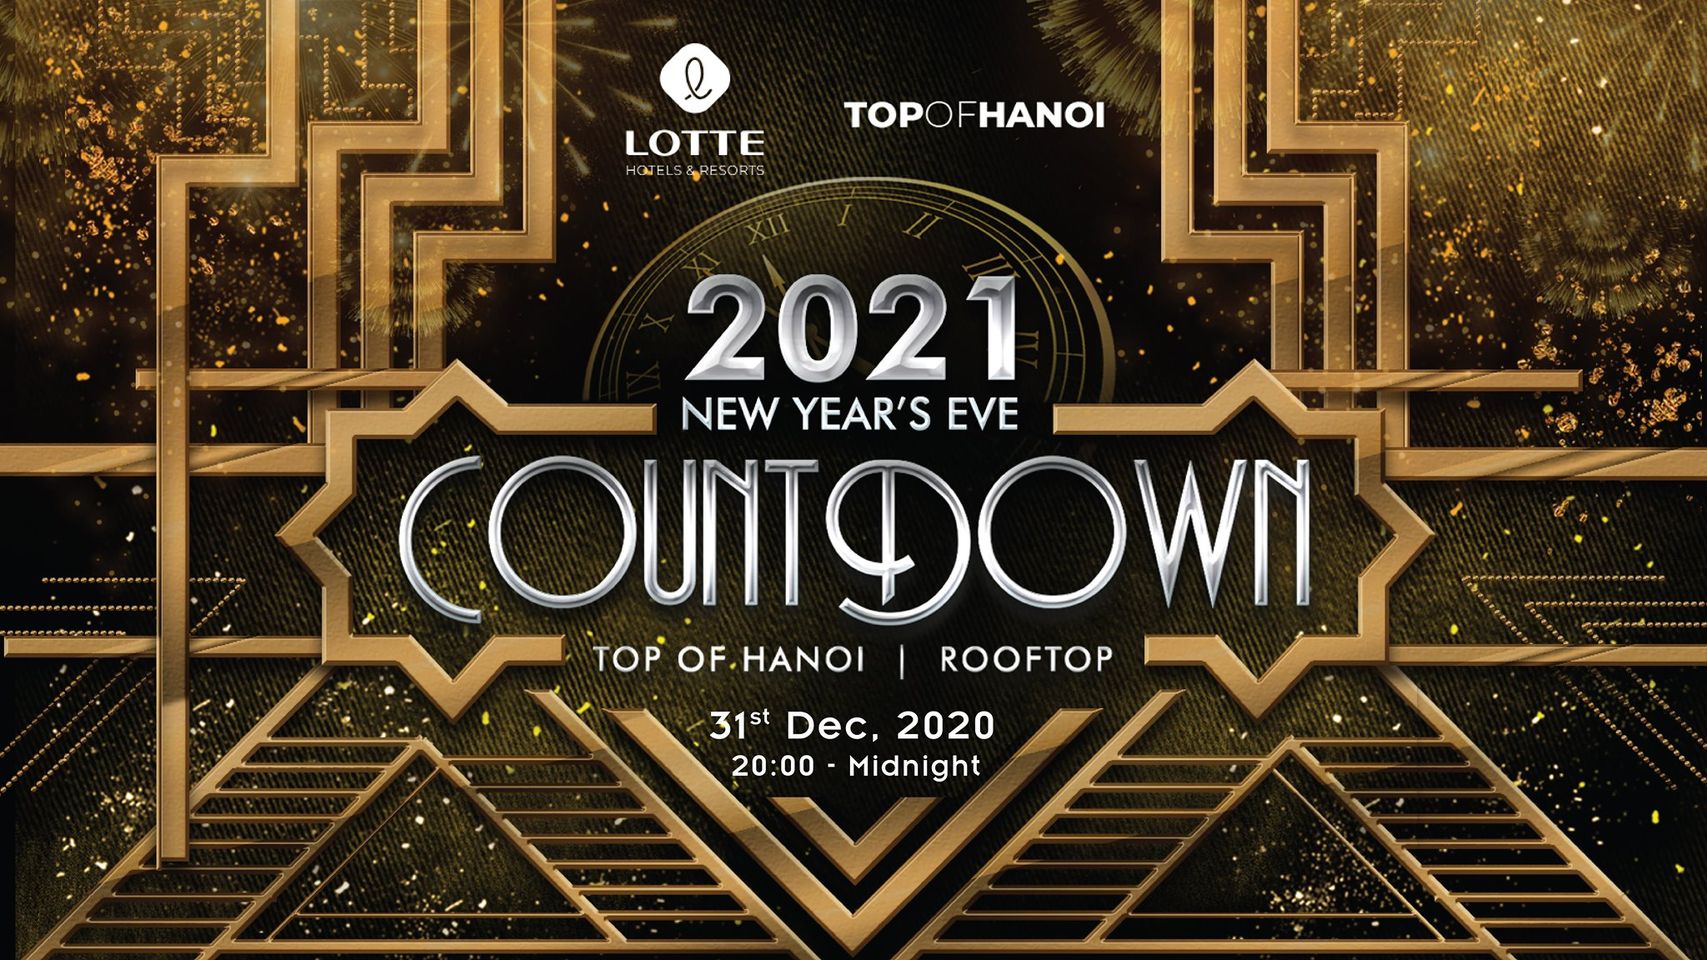 2021 Countown Hanoi